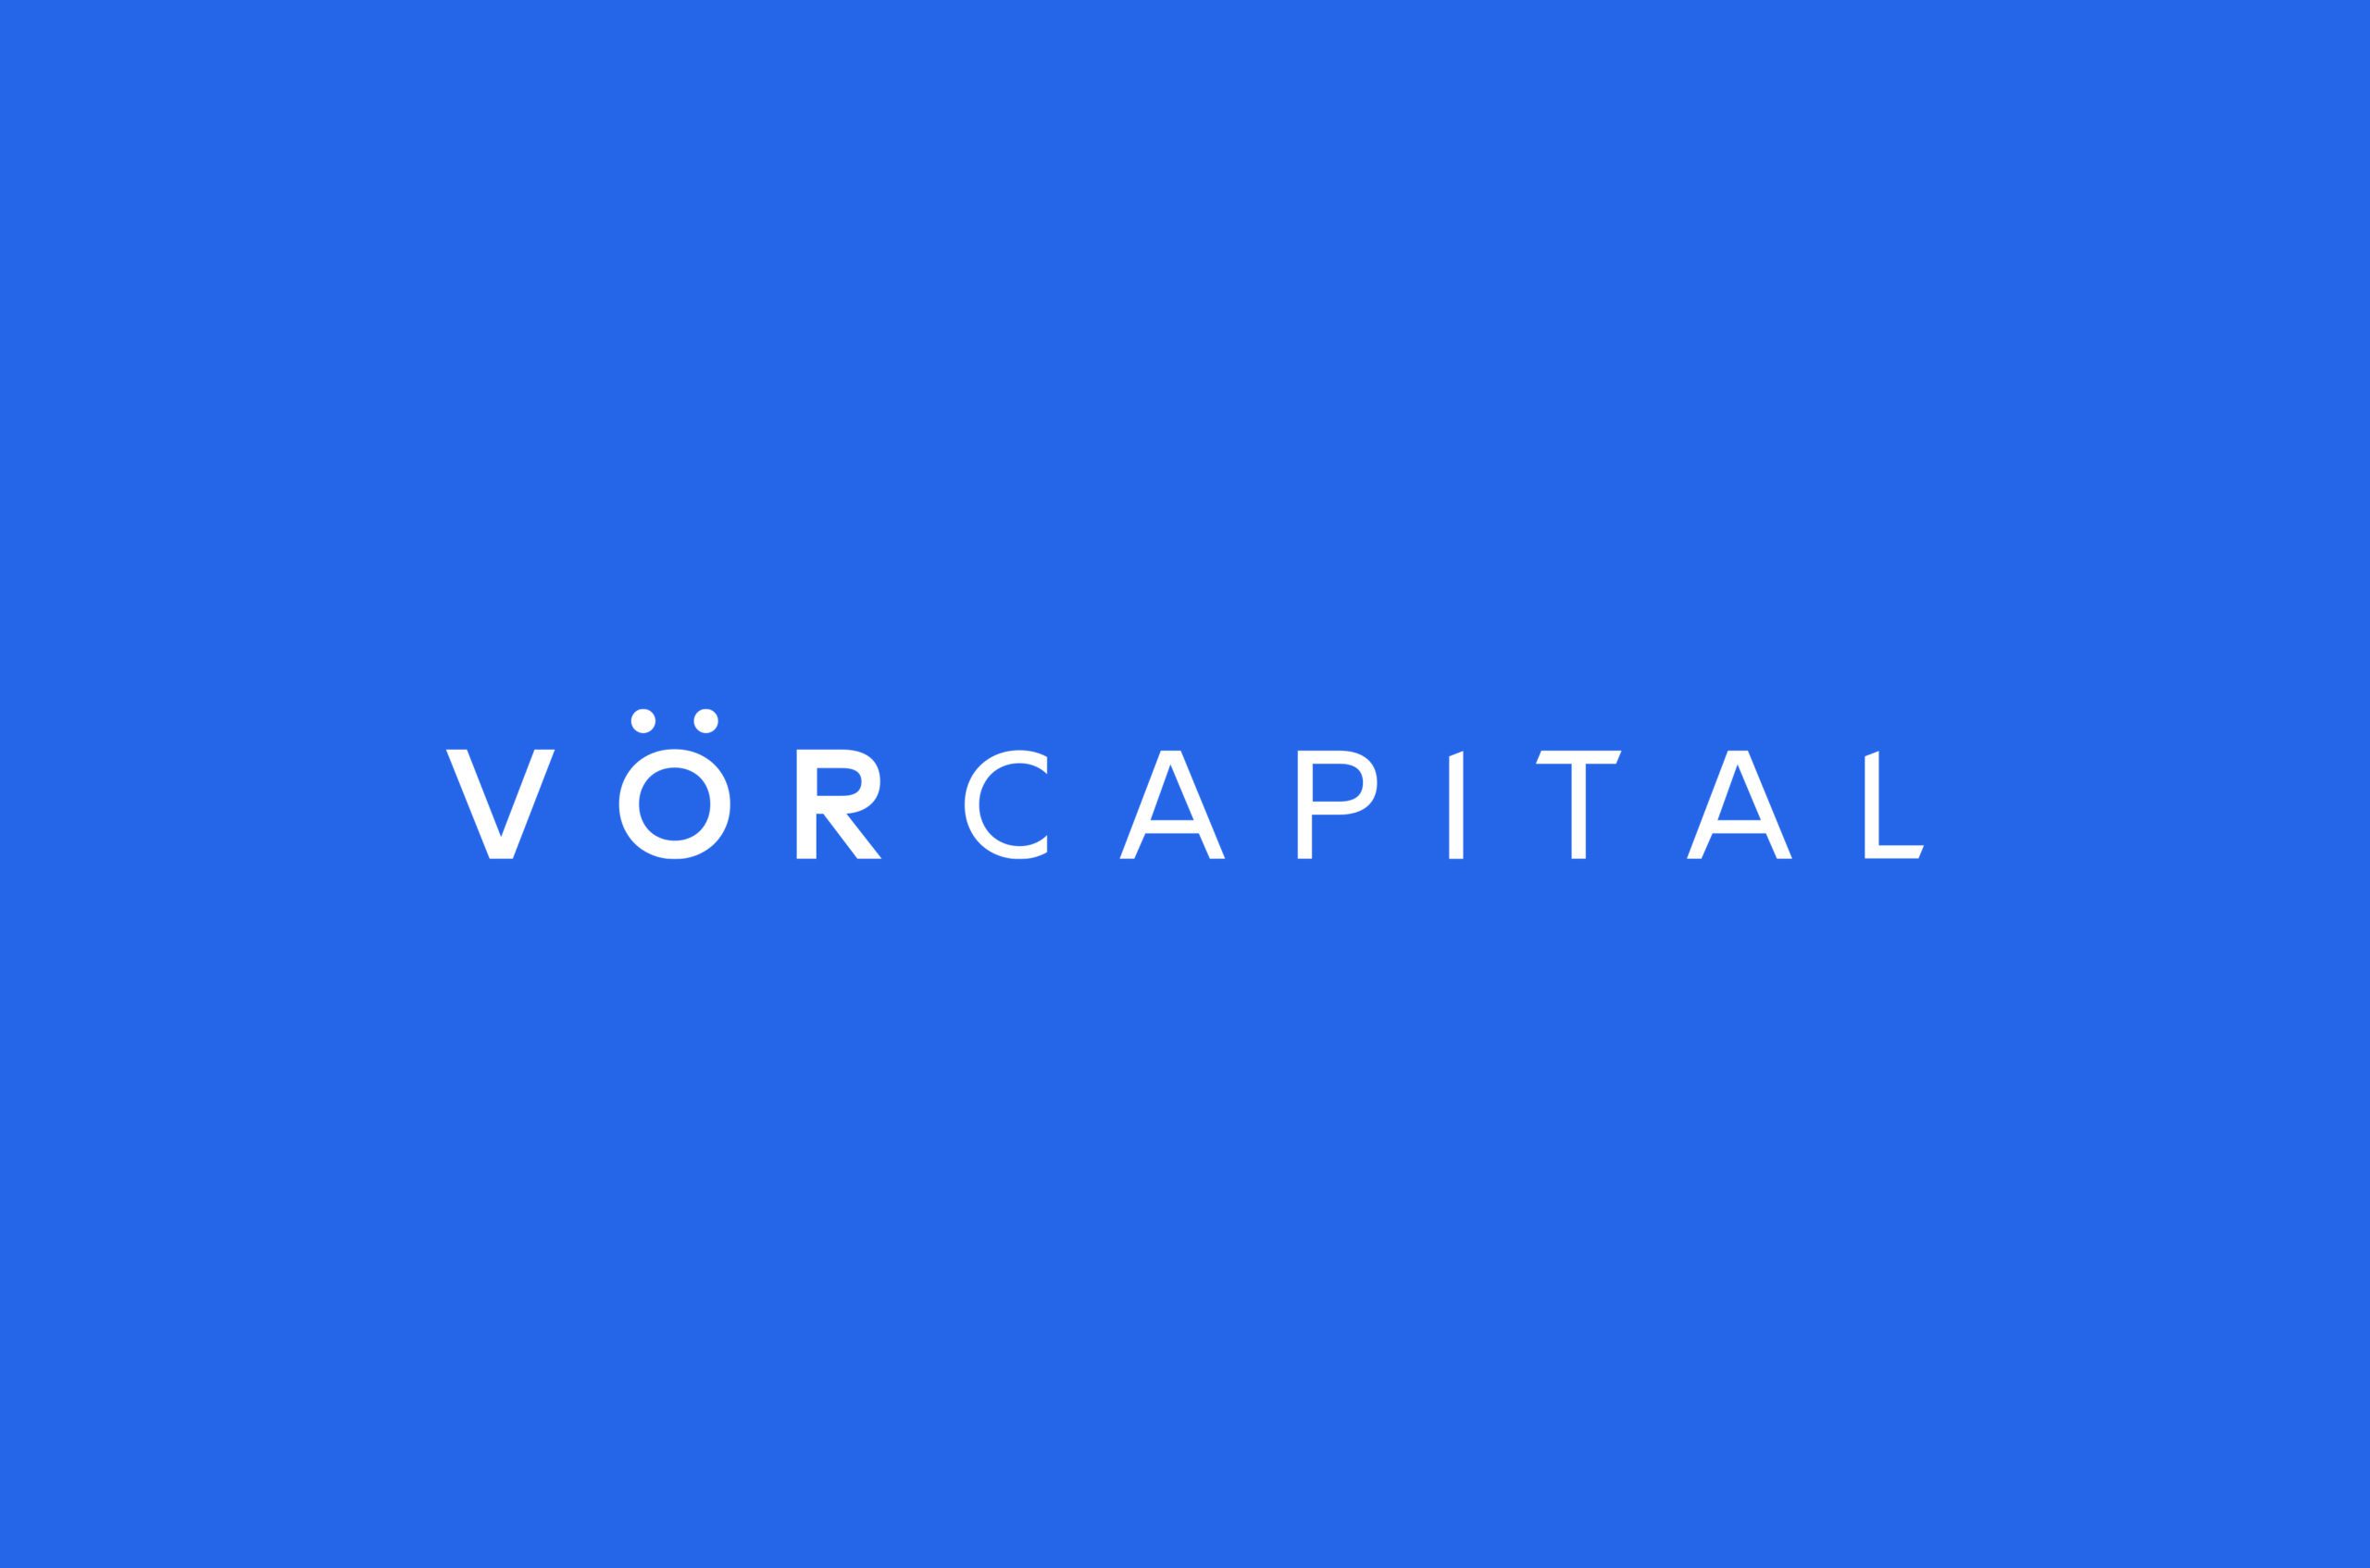 VOR Capital full logo white on blue